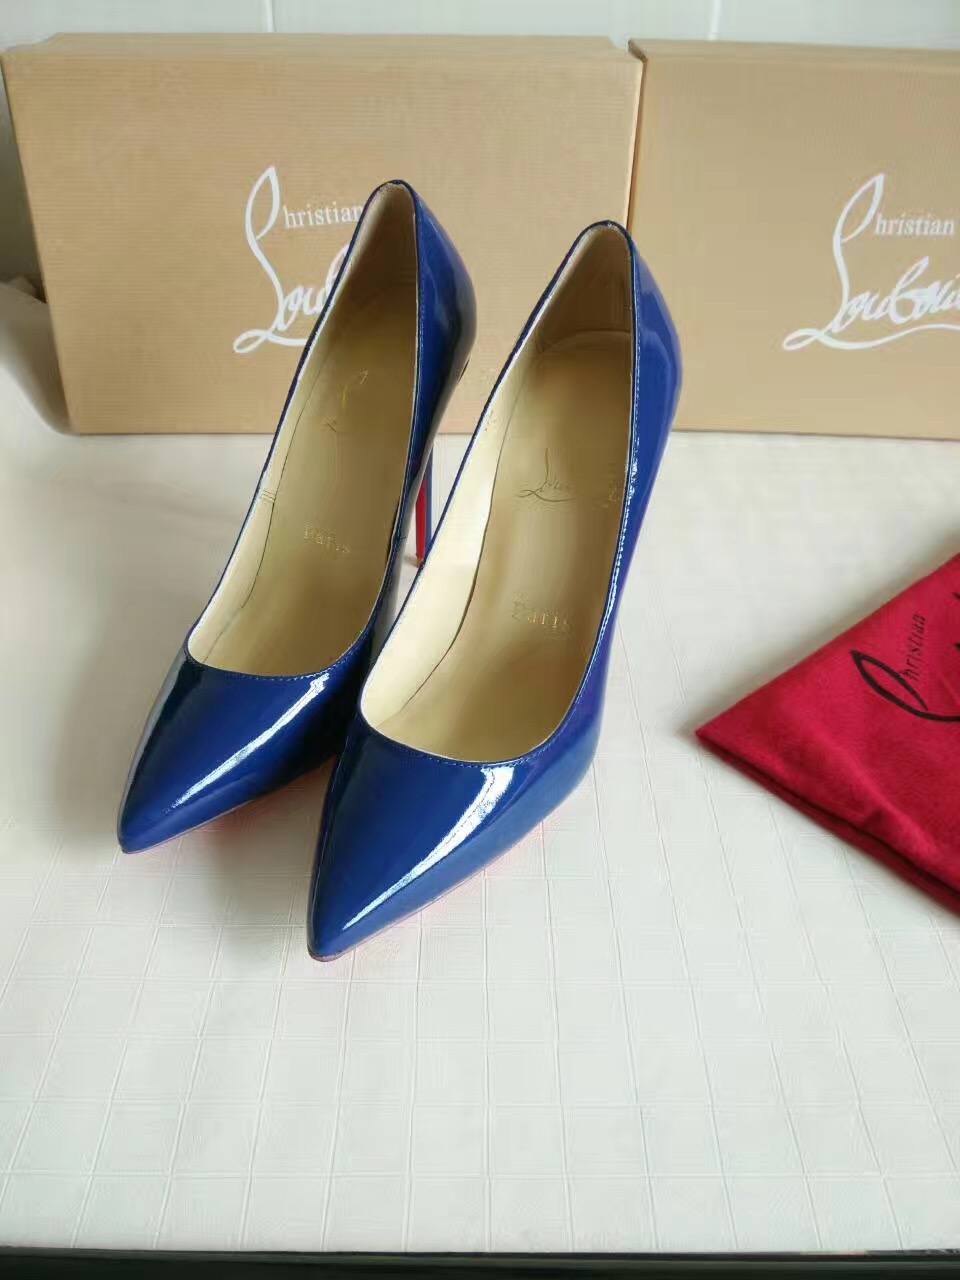 Christian Louboutin CL heels blue 11cm sandals shoes